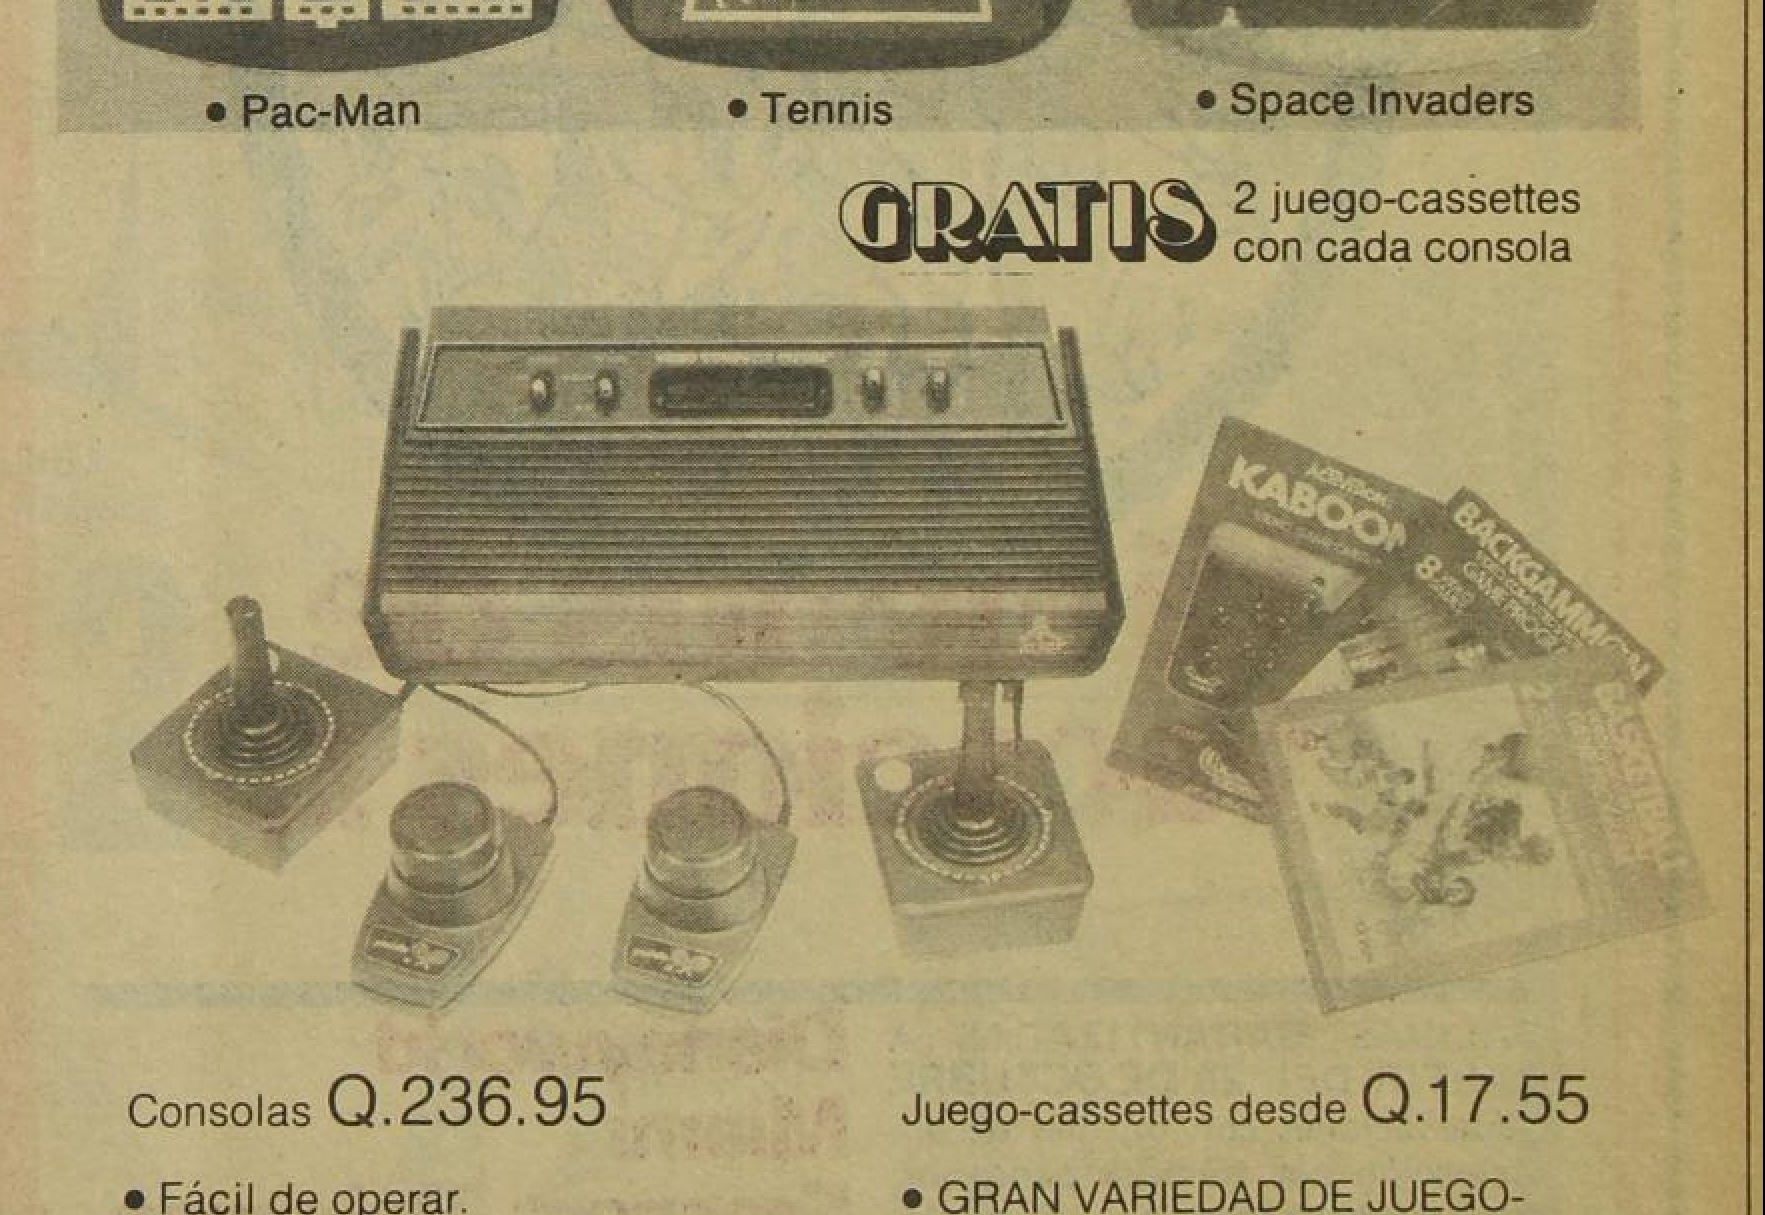 1976: بدأت ألعاب الفيديو في الظهور في غواتيمالا